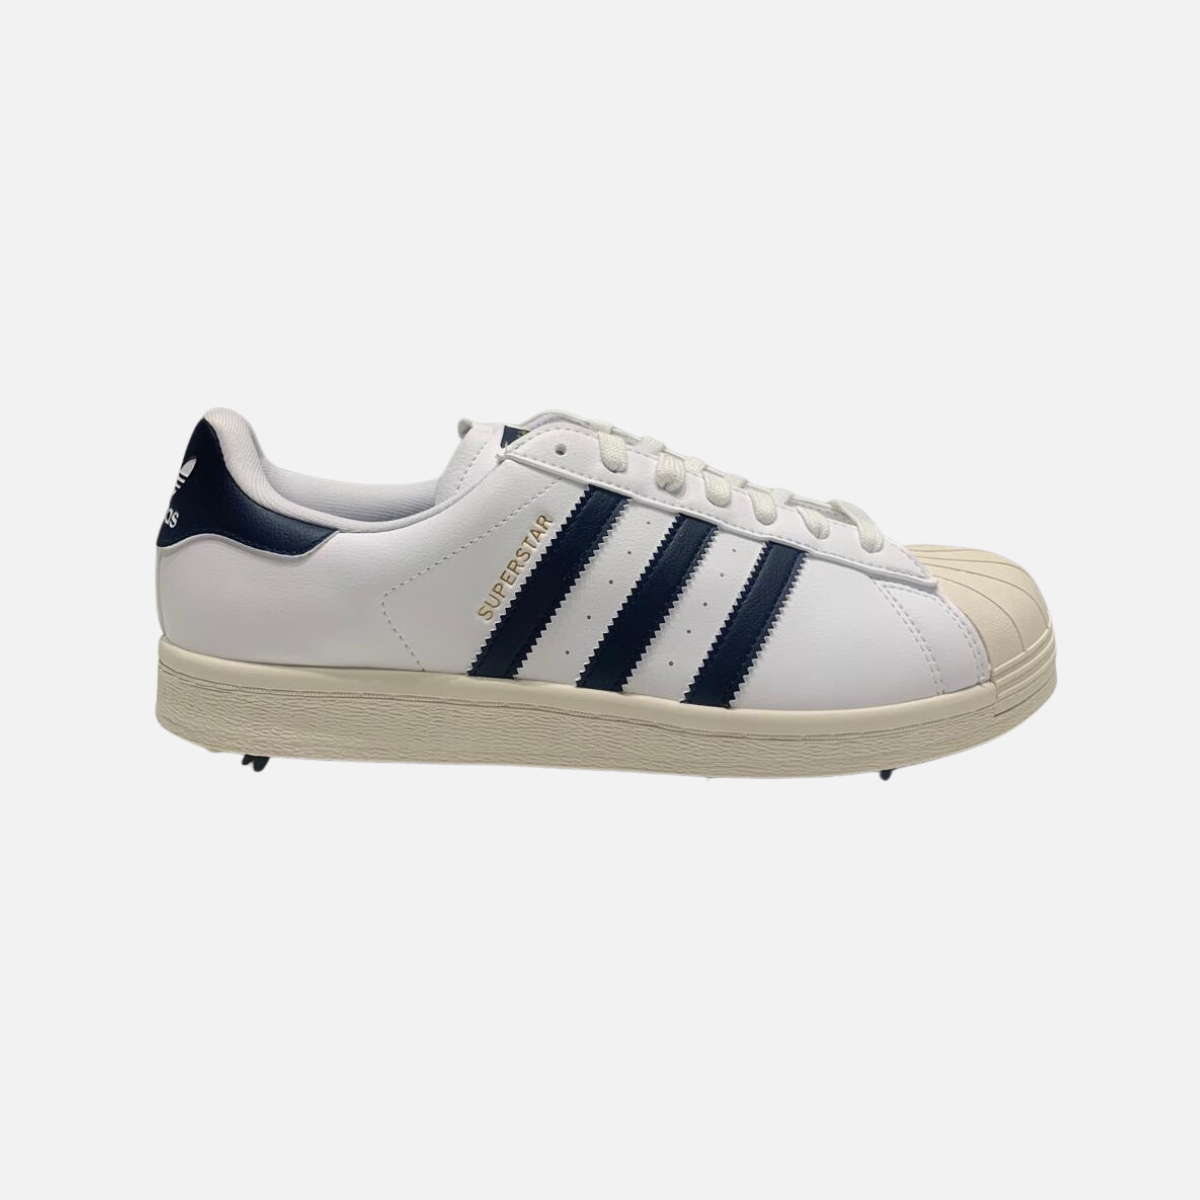 Adidas Superstar Unisex Golf Shoes -White/Collegiate Navy